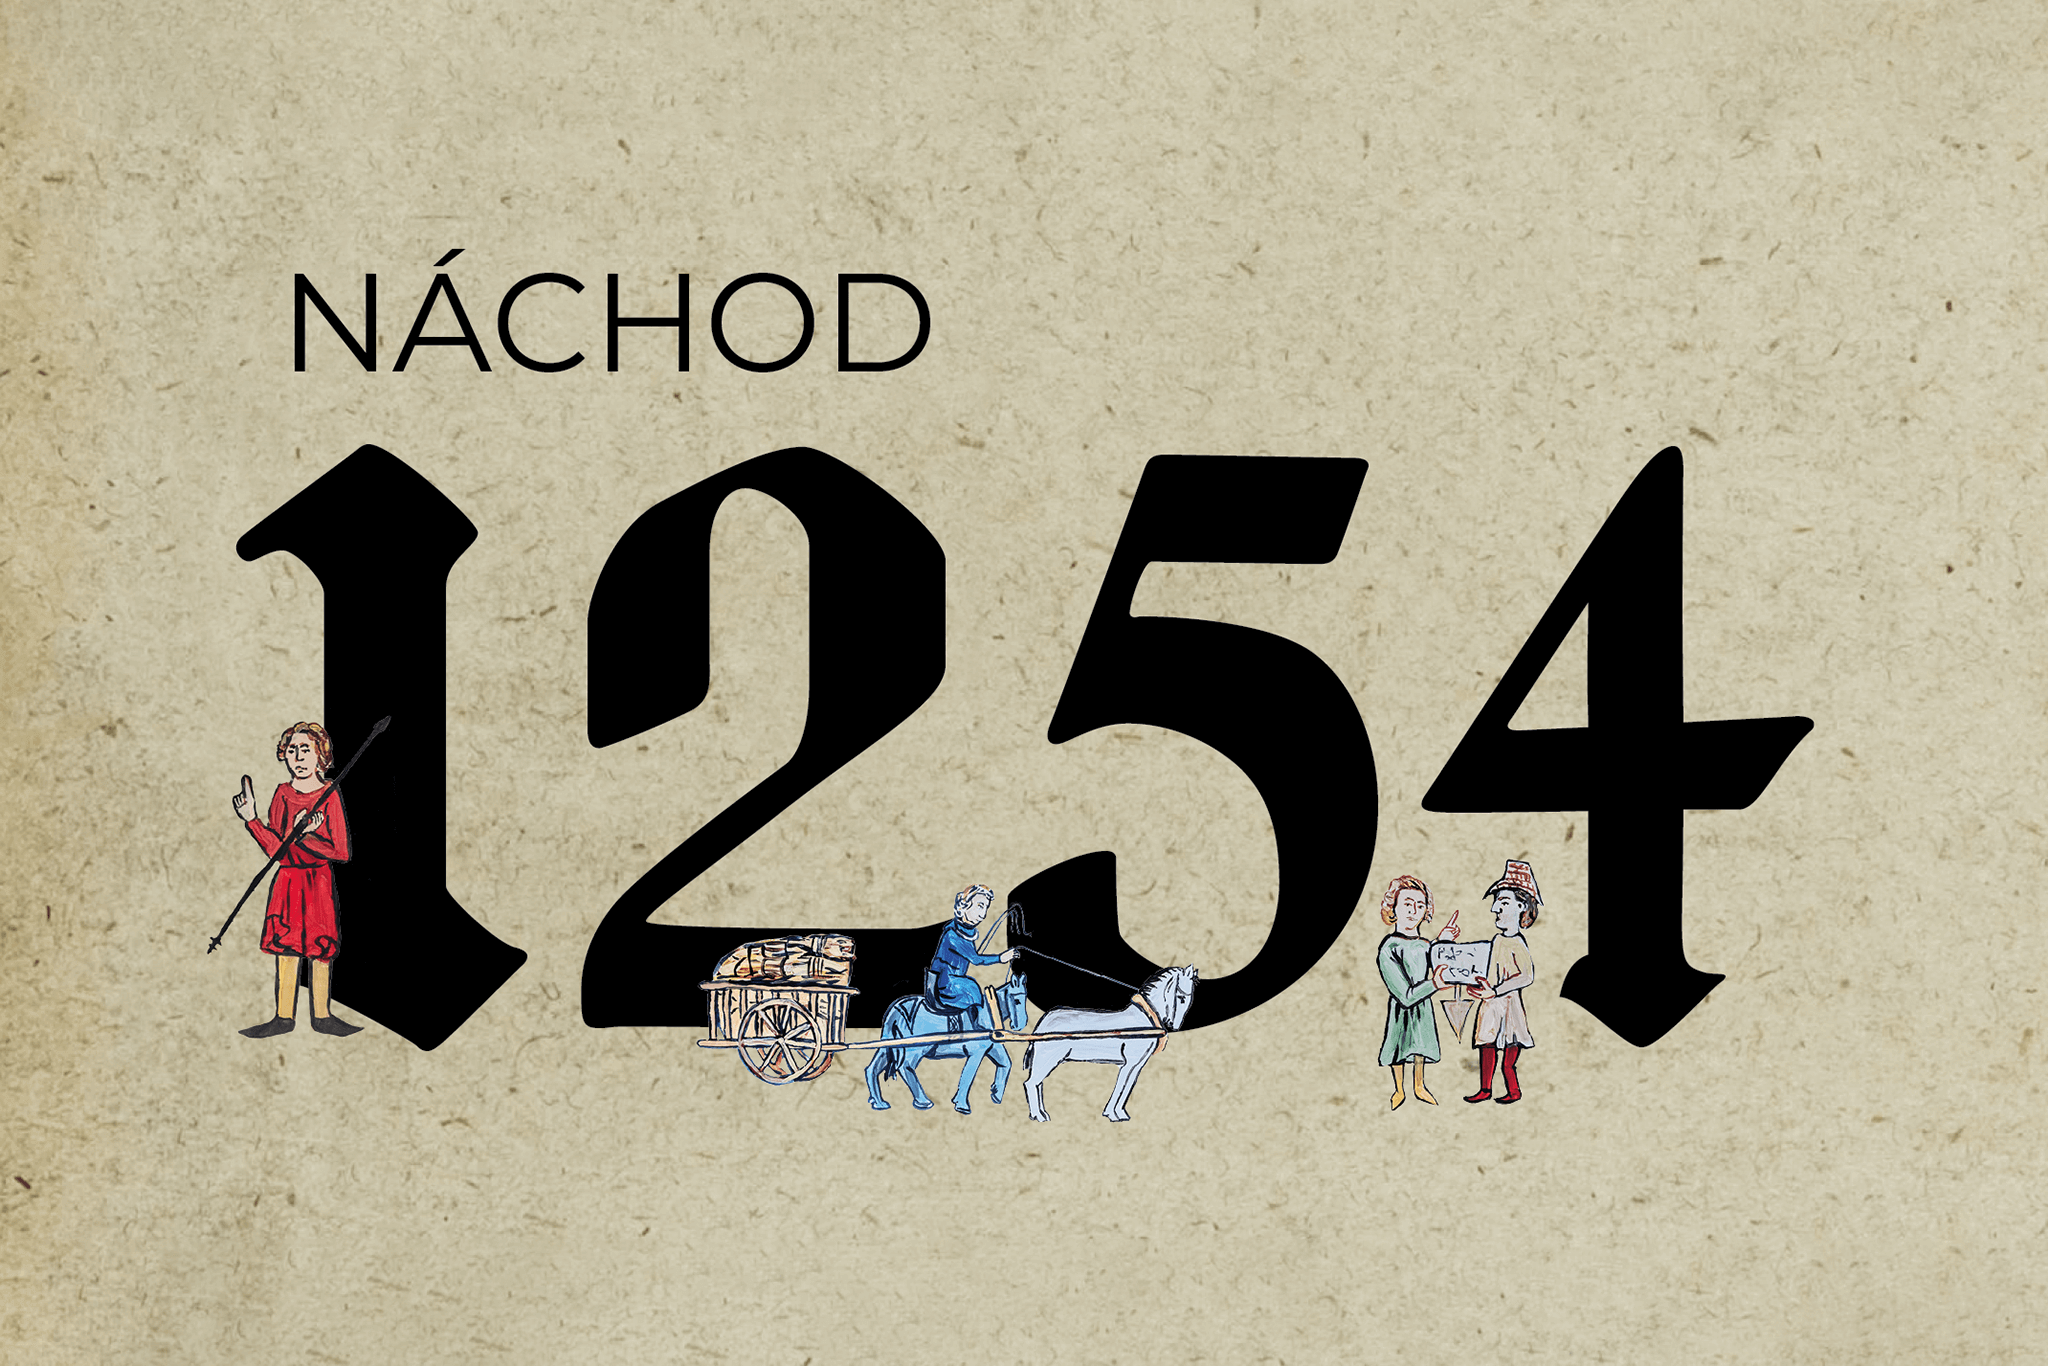 Nachod 1254